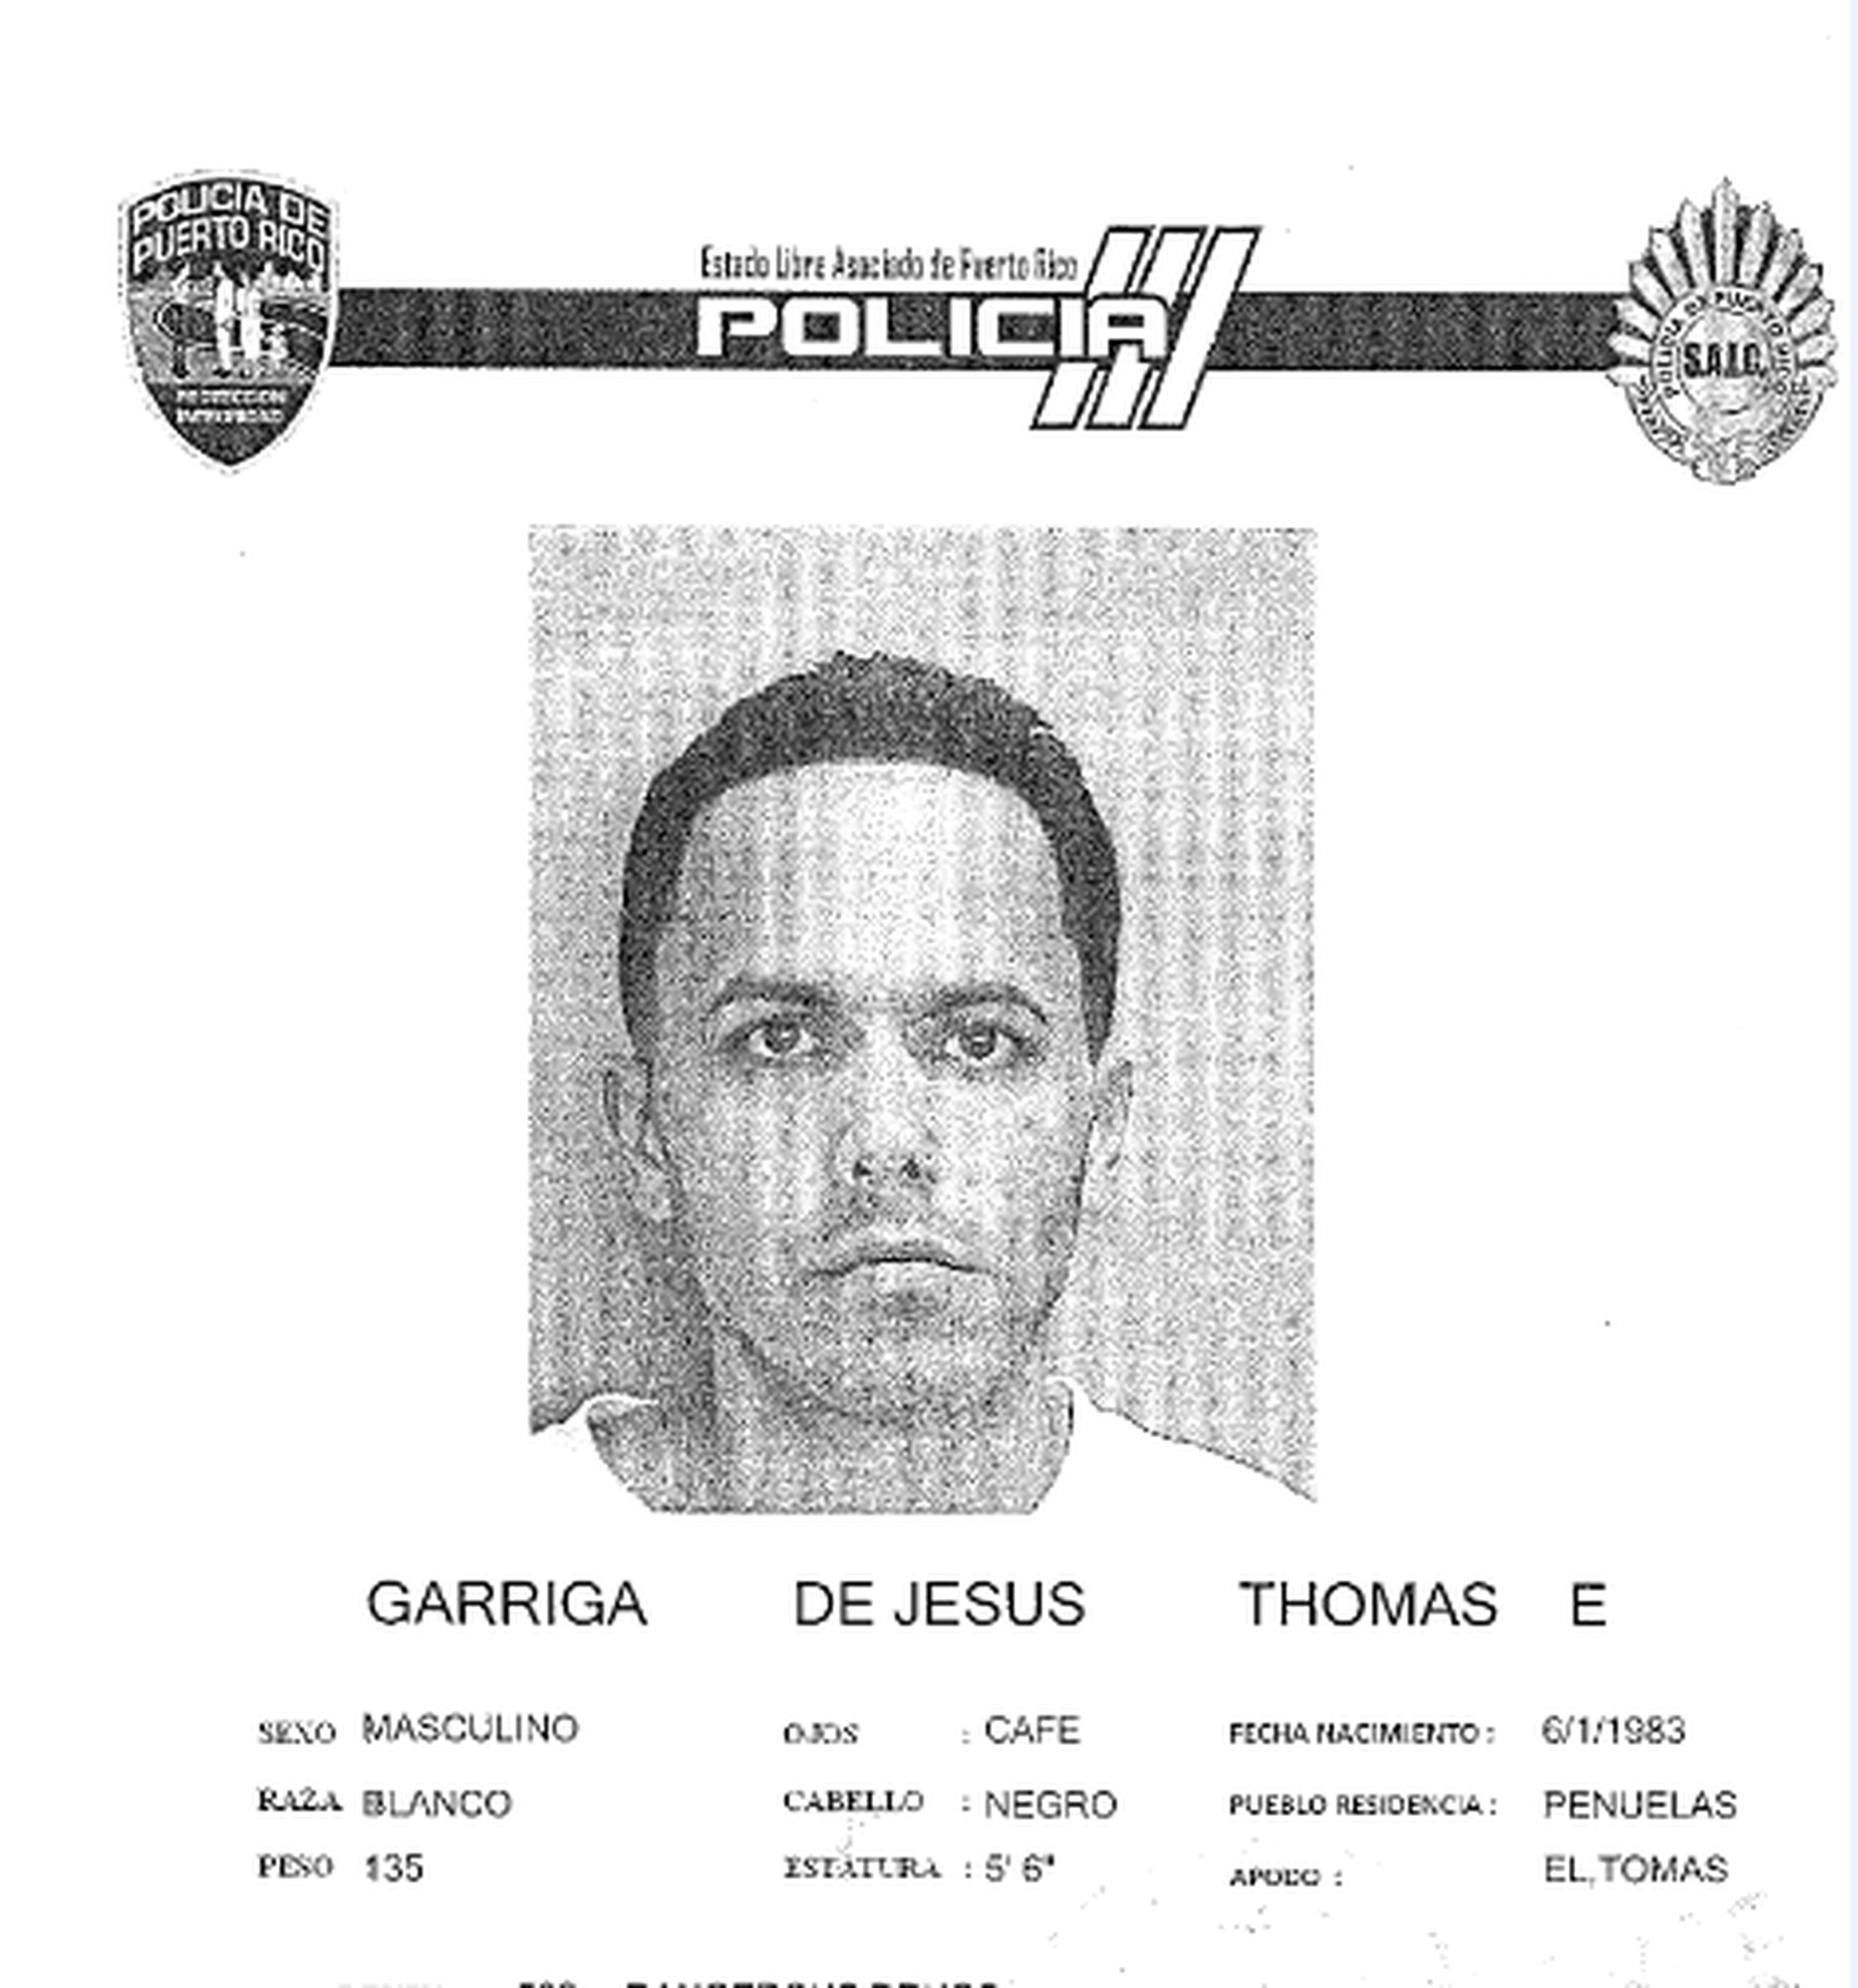 Thomas Garriga De Jesús de 37 años, fue acusado en ausencia por el delito de maltrato mediante amenaza (artículo 3.3) de la Ley 54 para la Prevención e Intervención con la Violencia Doméstica.